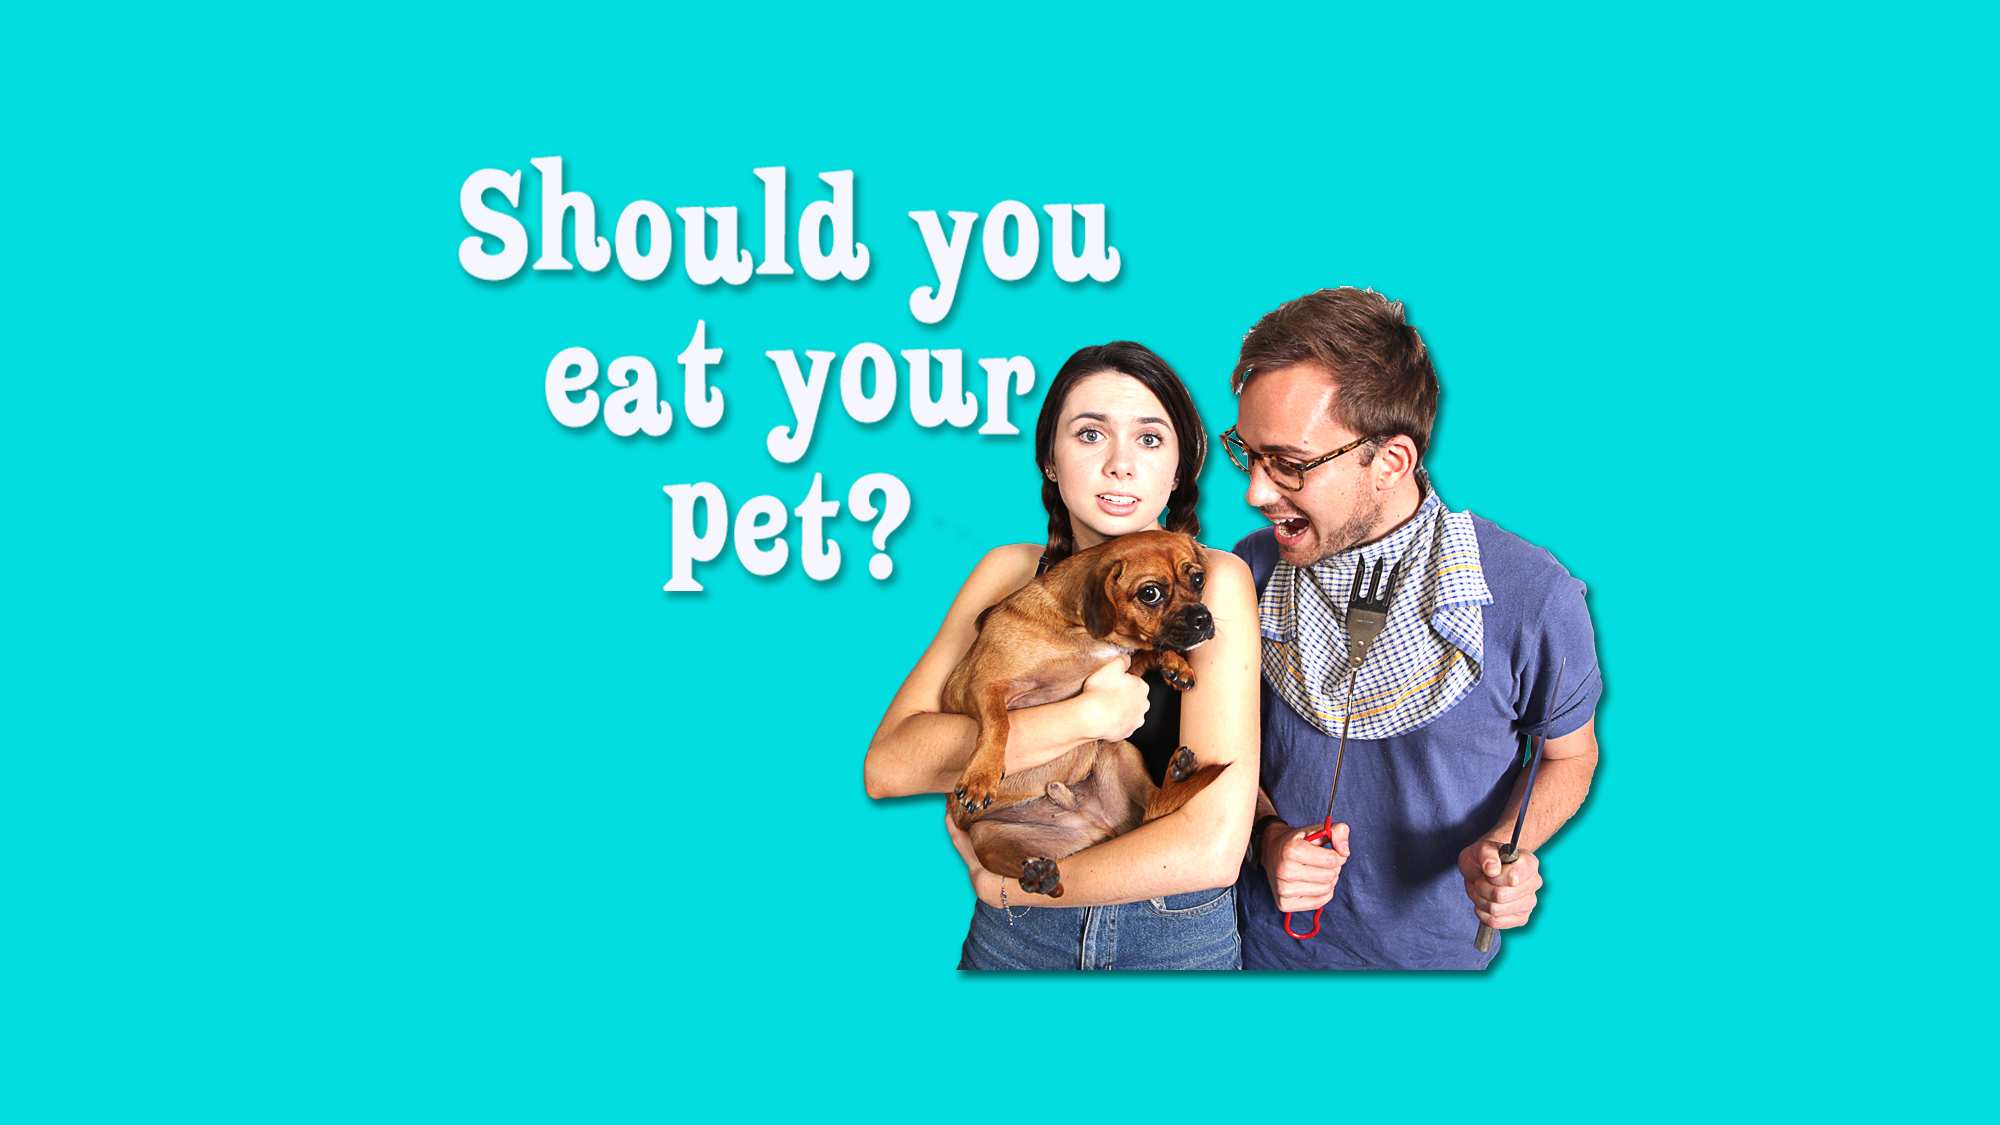 Should you eat your pet?